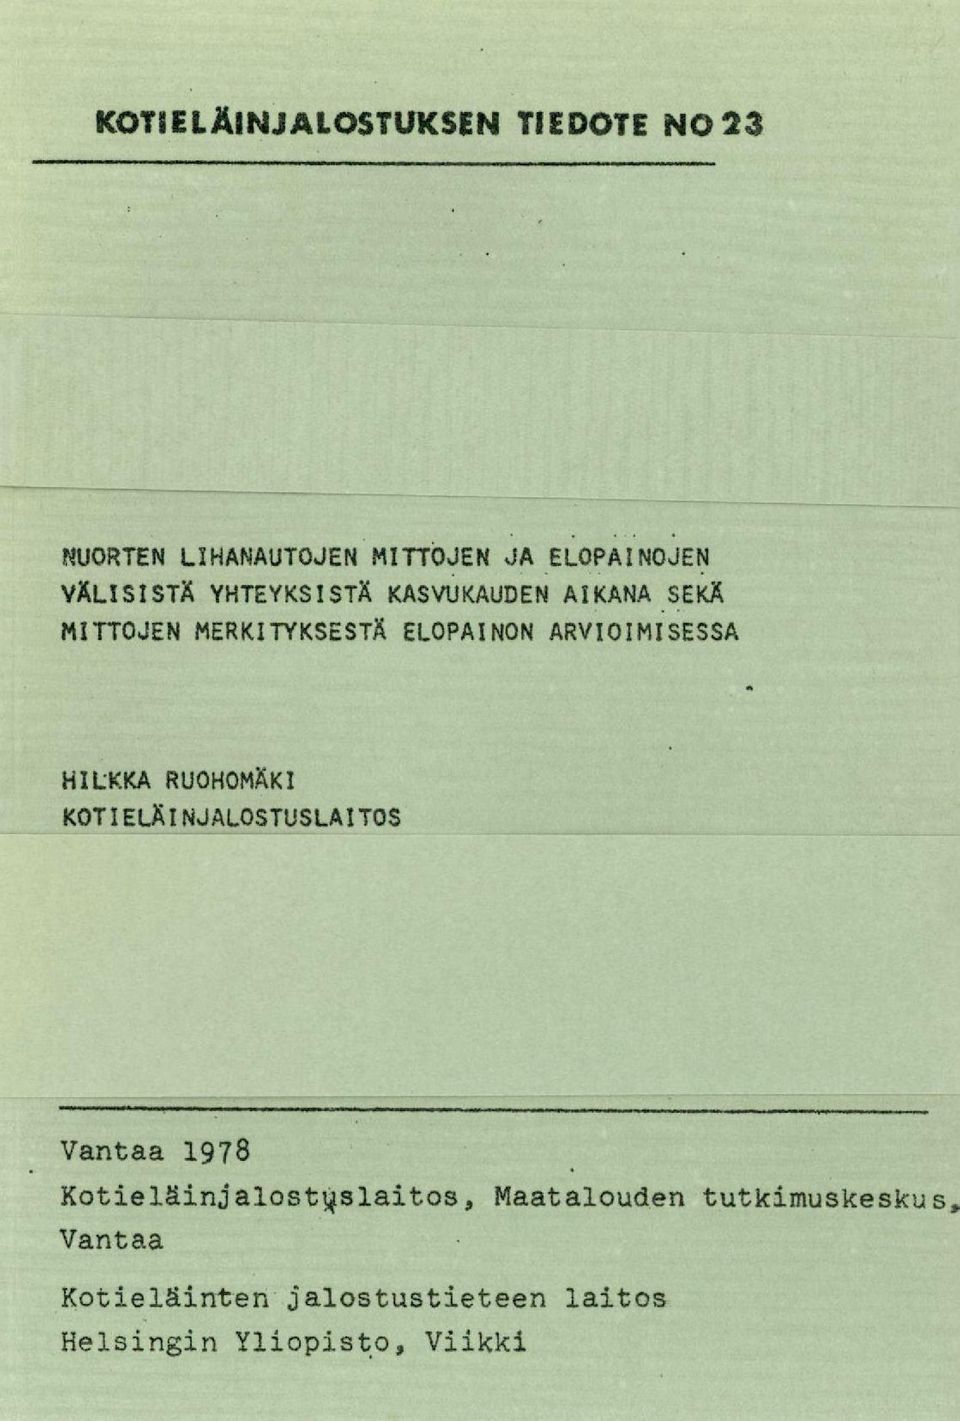 ARVIOIMISESSA HILKKA RUOHOMAKI KOTIELÄINJALOSTUSLAITOS Vantaa 1978